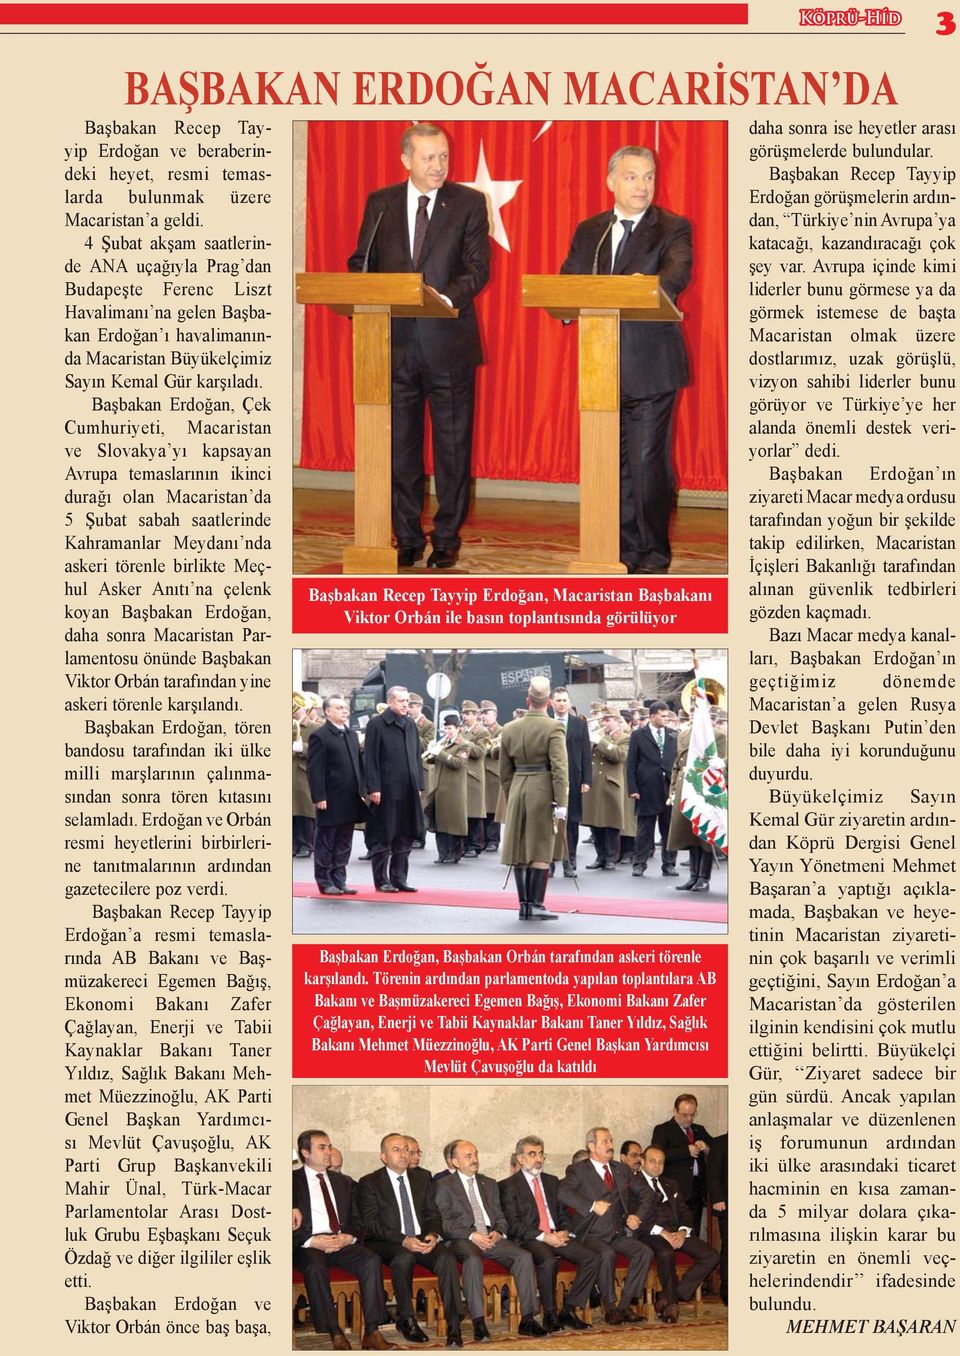 Başbakan Erdoğan, Çek Cumhuriyeti, Macaristan ve Slovakya yı kapsayan Avrupa temaslarının ikinci durağı olan Macaristan da 5 Şubat sabah saatlerinde Kahramanlar Meydanı nda askeri törenle birlikte